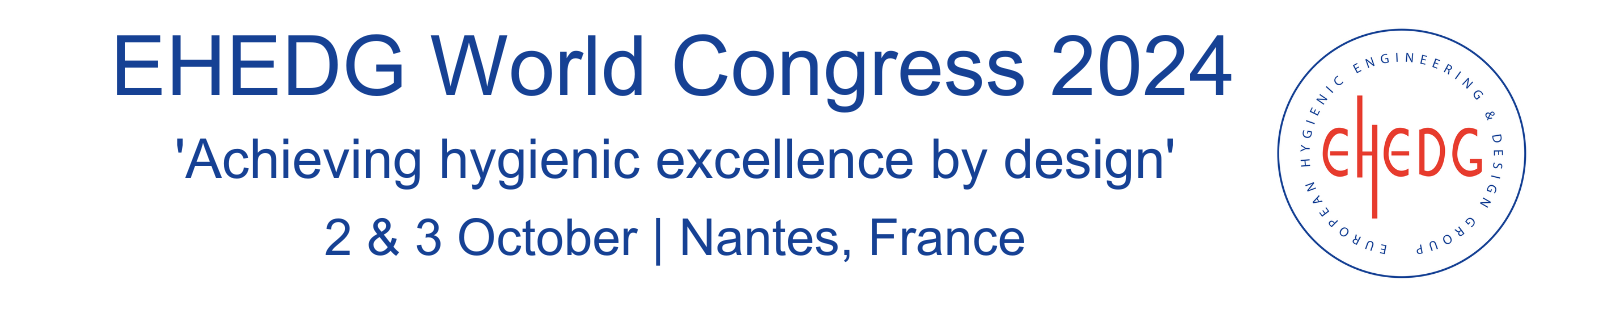 Congress logo 1